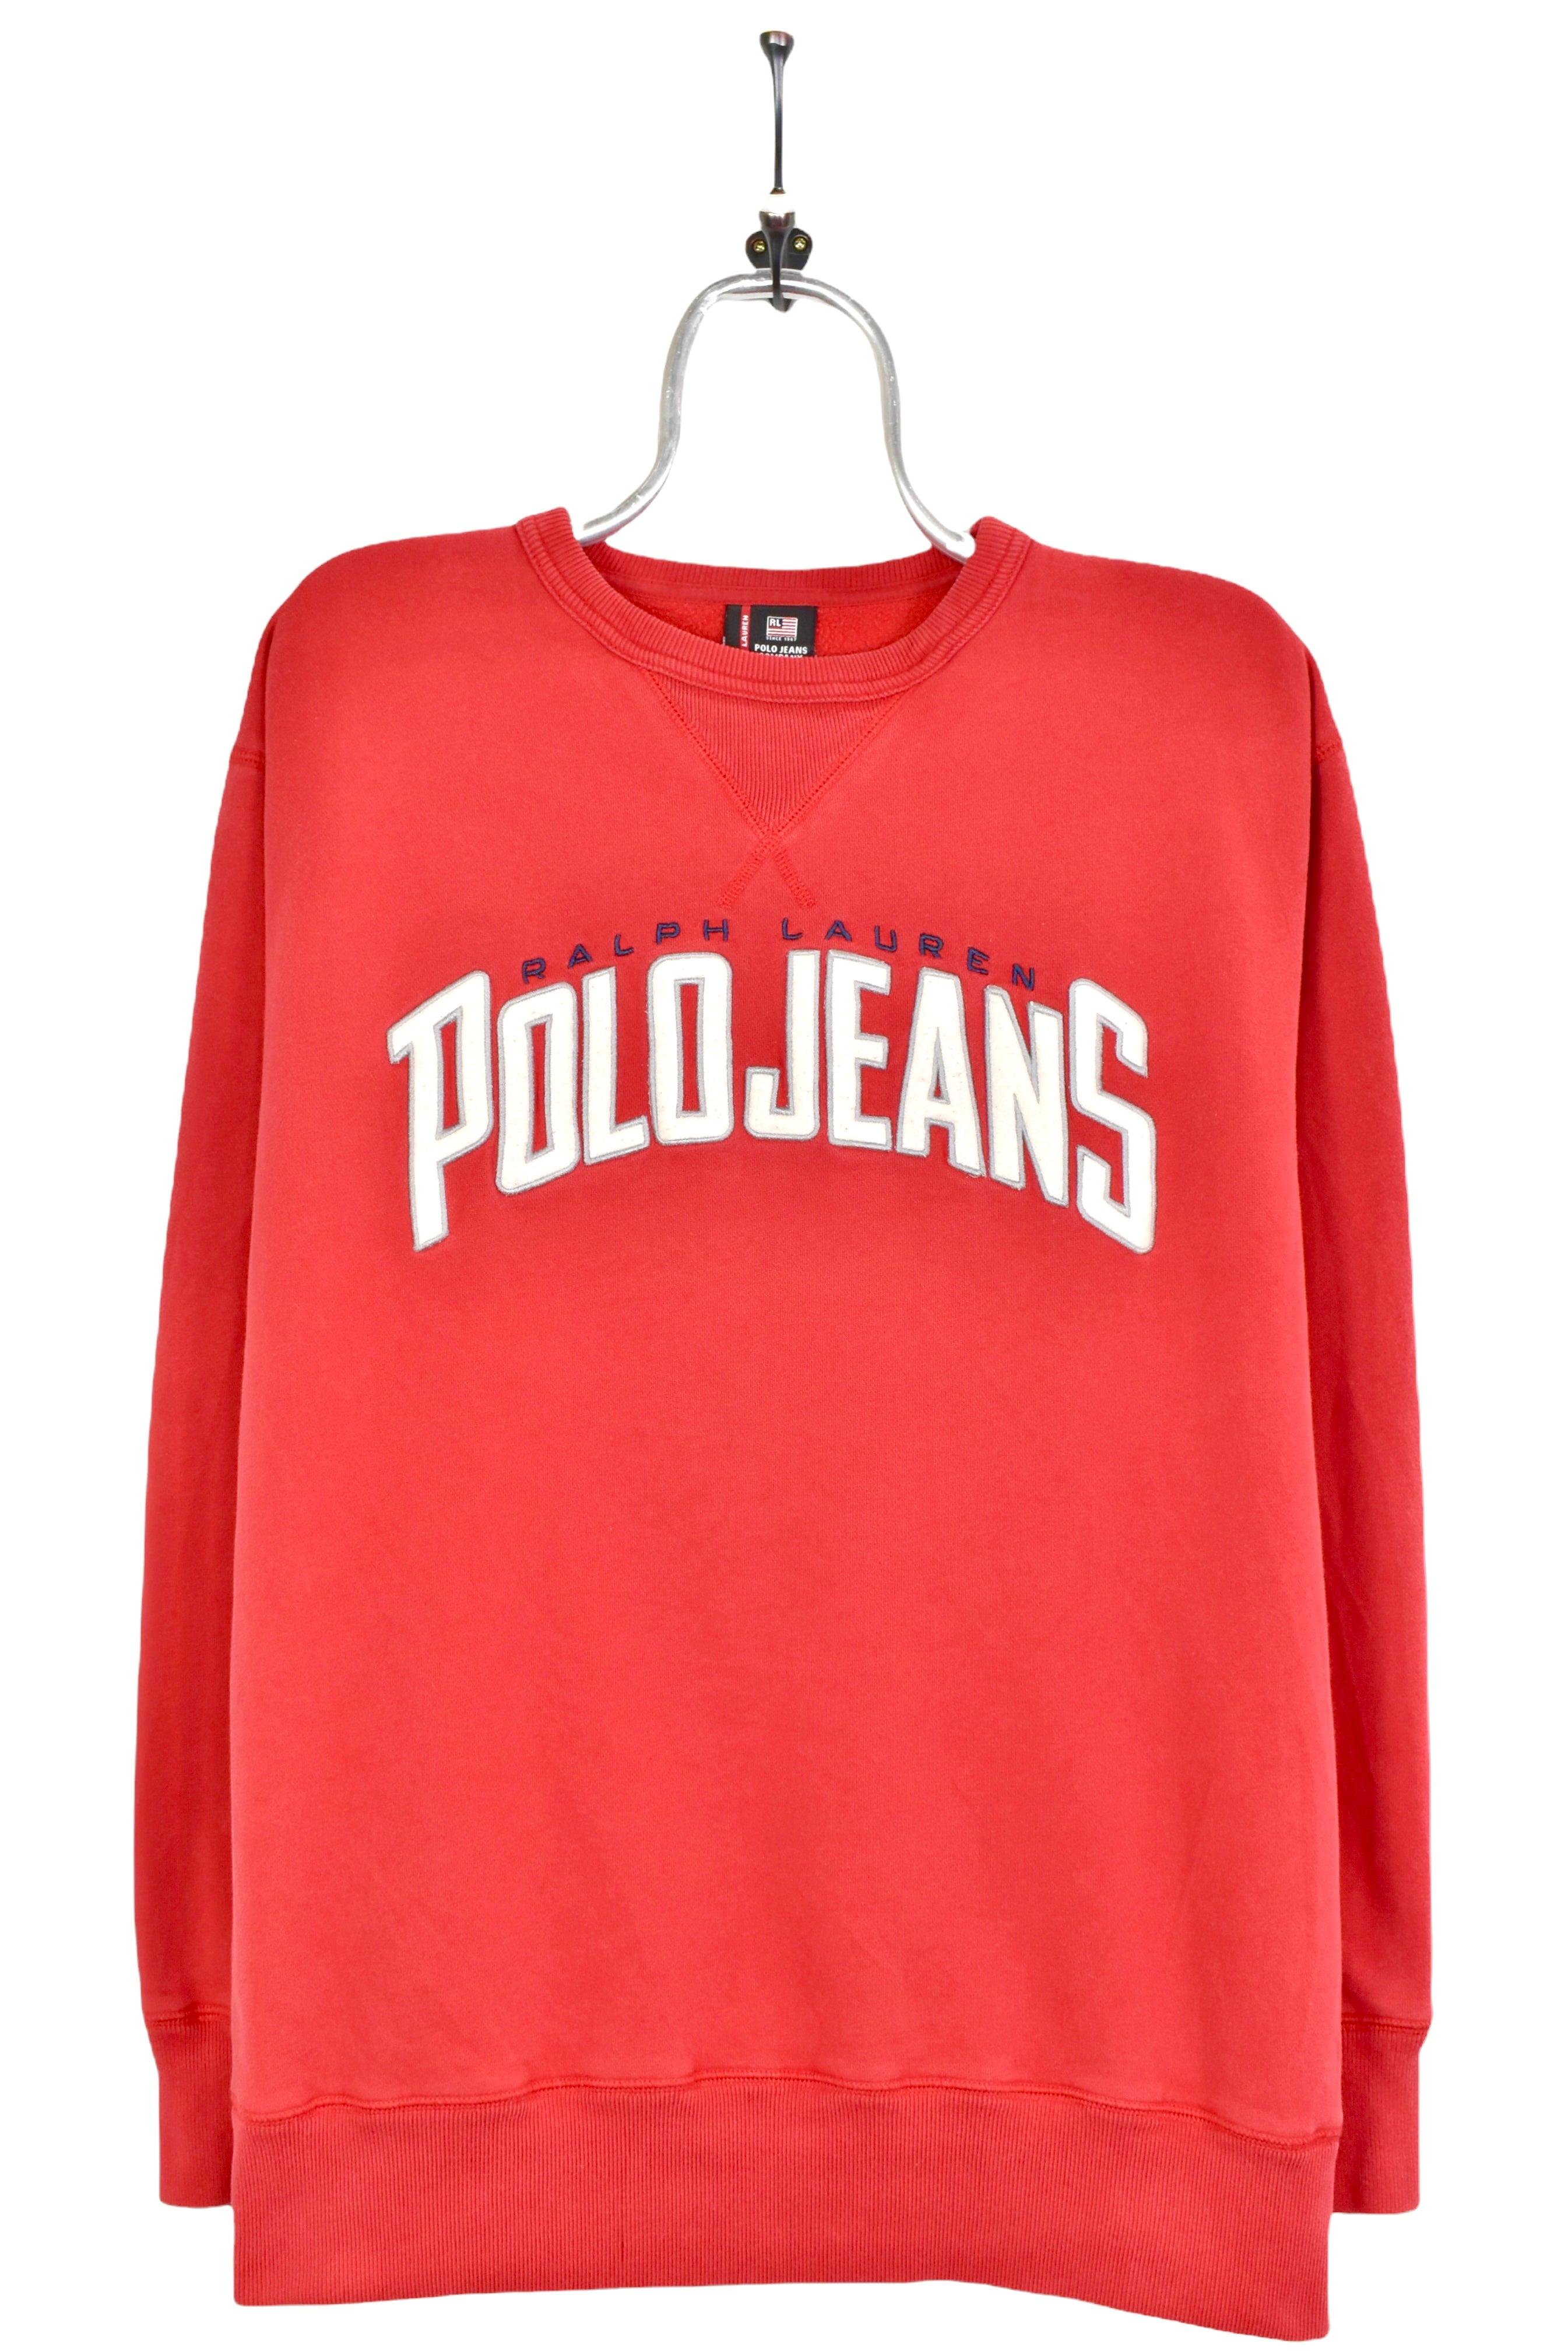 Vintage Ralph Lauren sweatshirt, Polo embroidered crewneck - large, red RALPH LAUREN